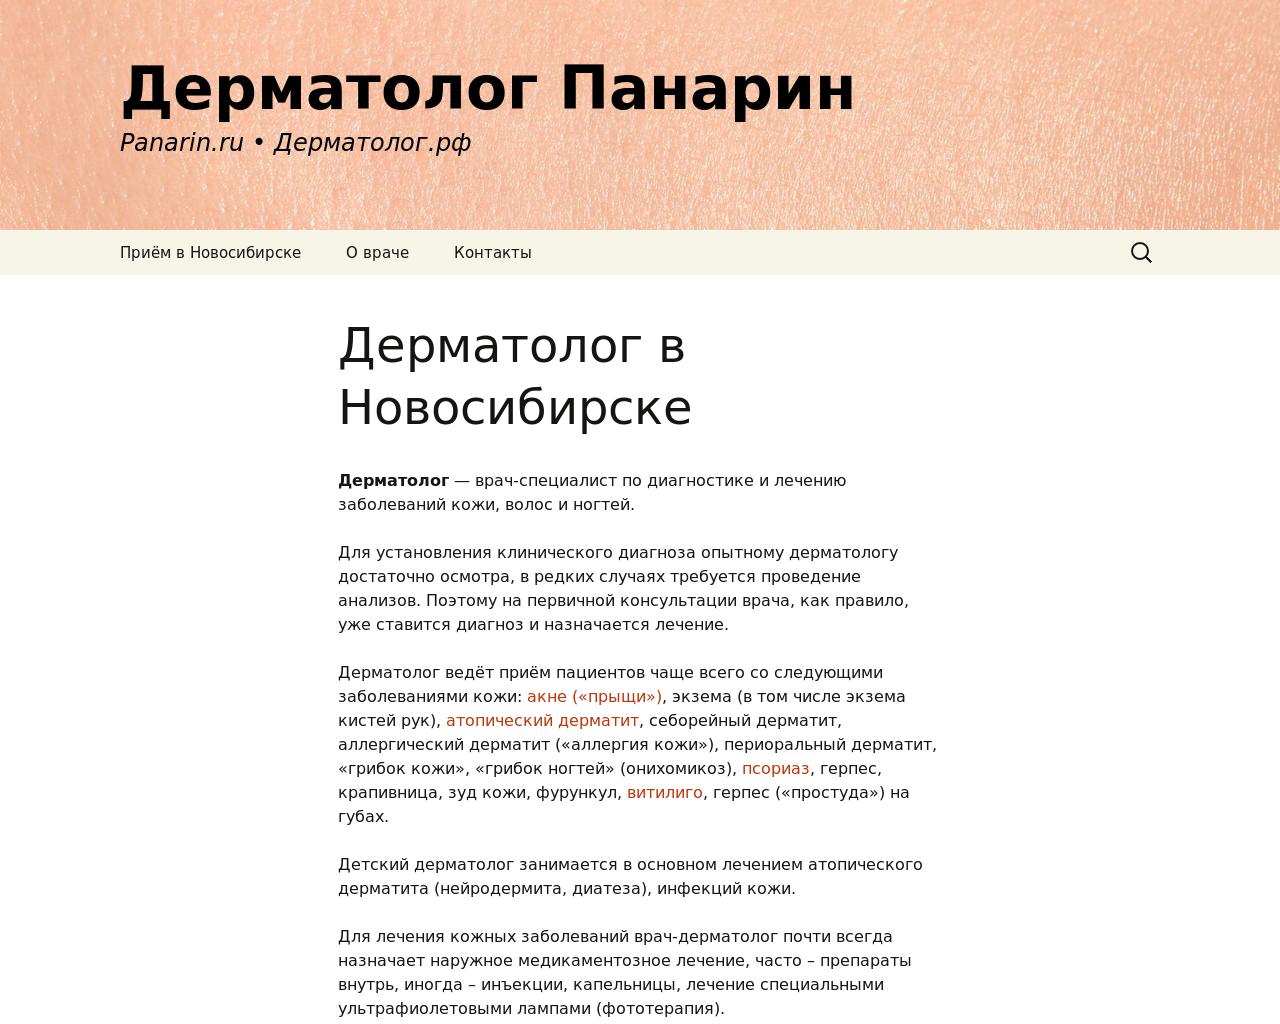 Изображение сайта panarin.ru в разрешении 1280x1024